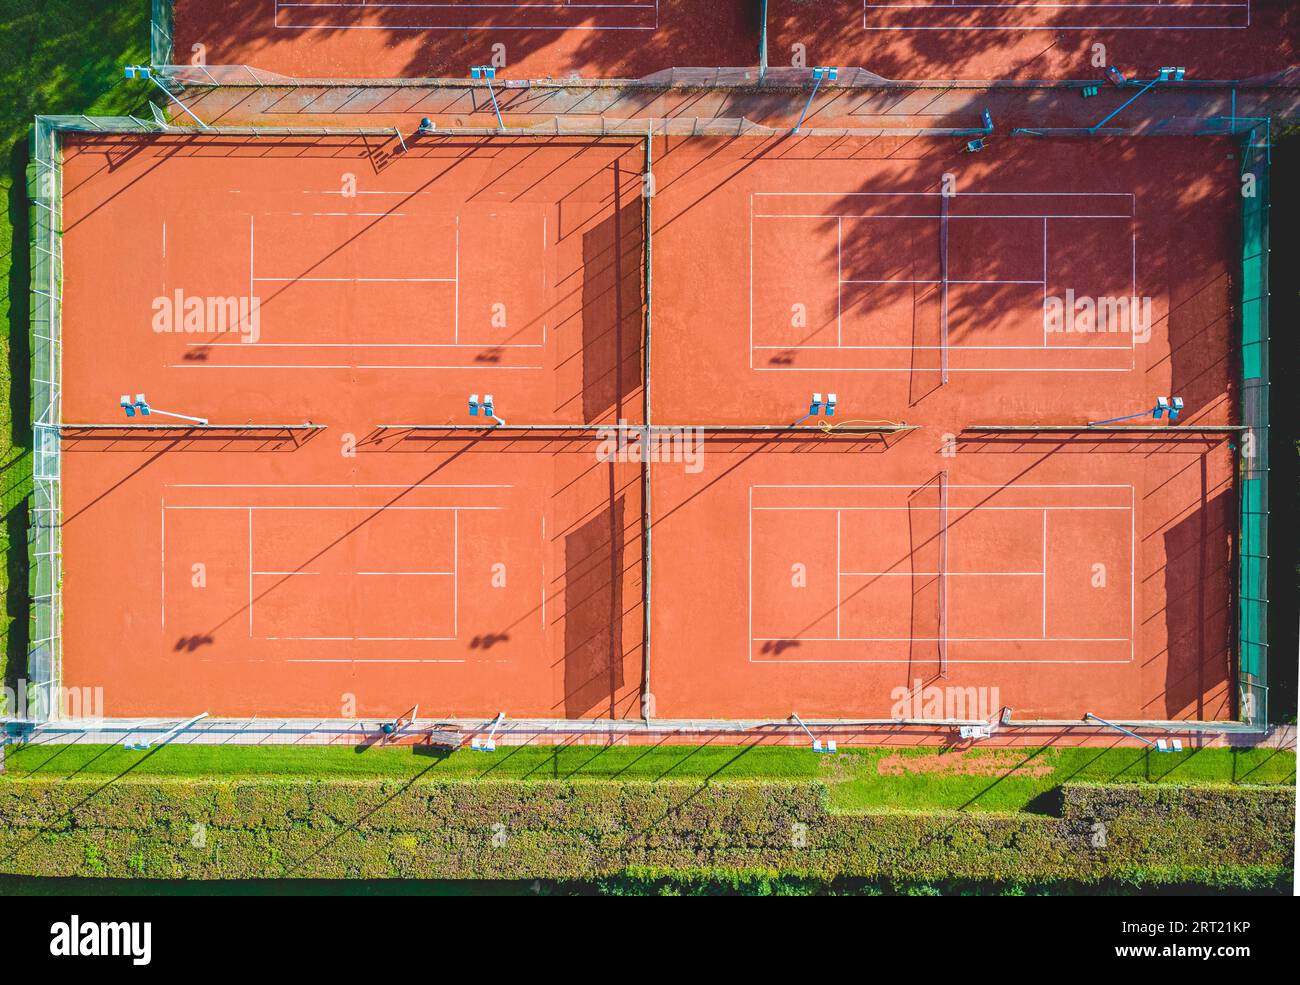 Luftaufnahme eines einzelnen Tennisplatzes aus rotem Ton ohne Spieler Stockfoto